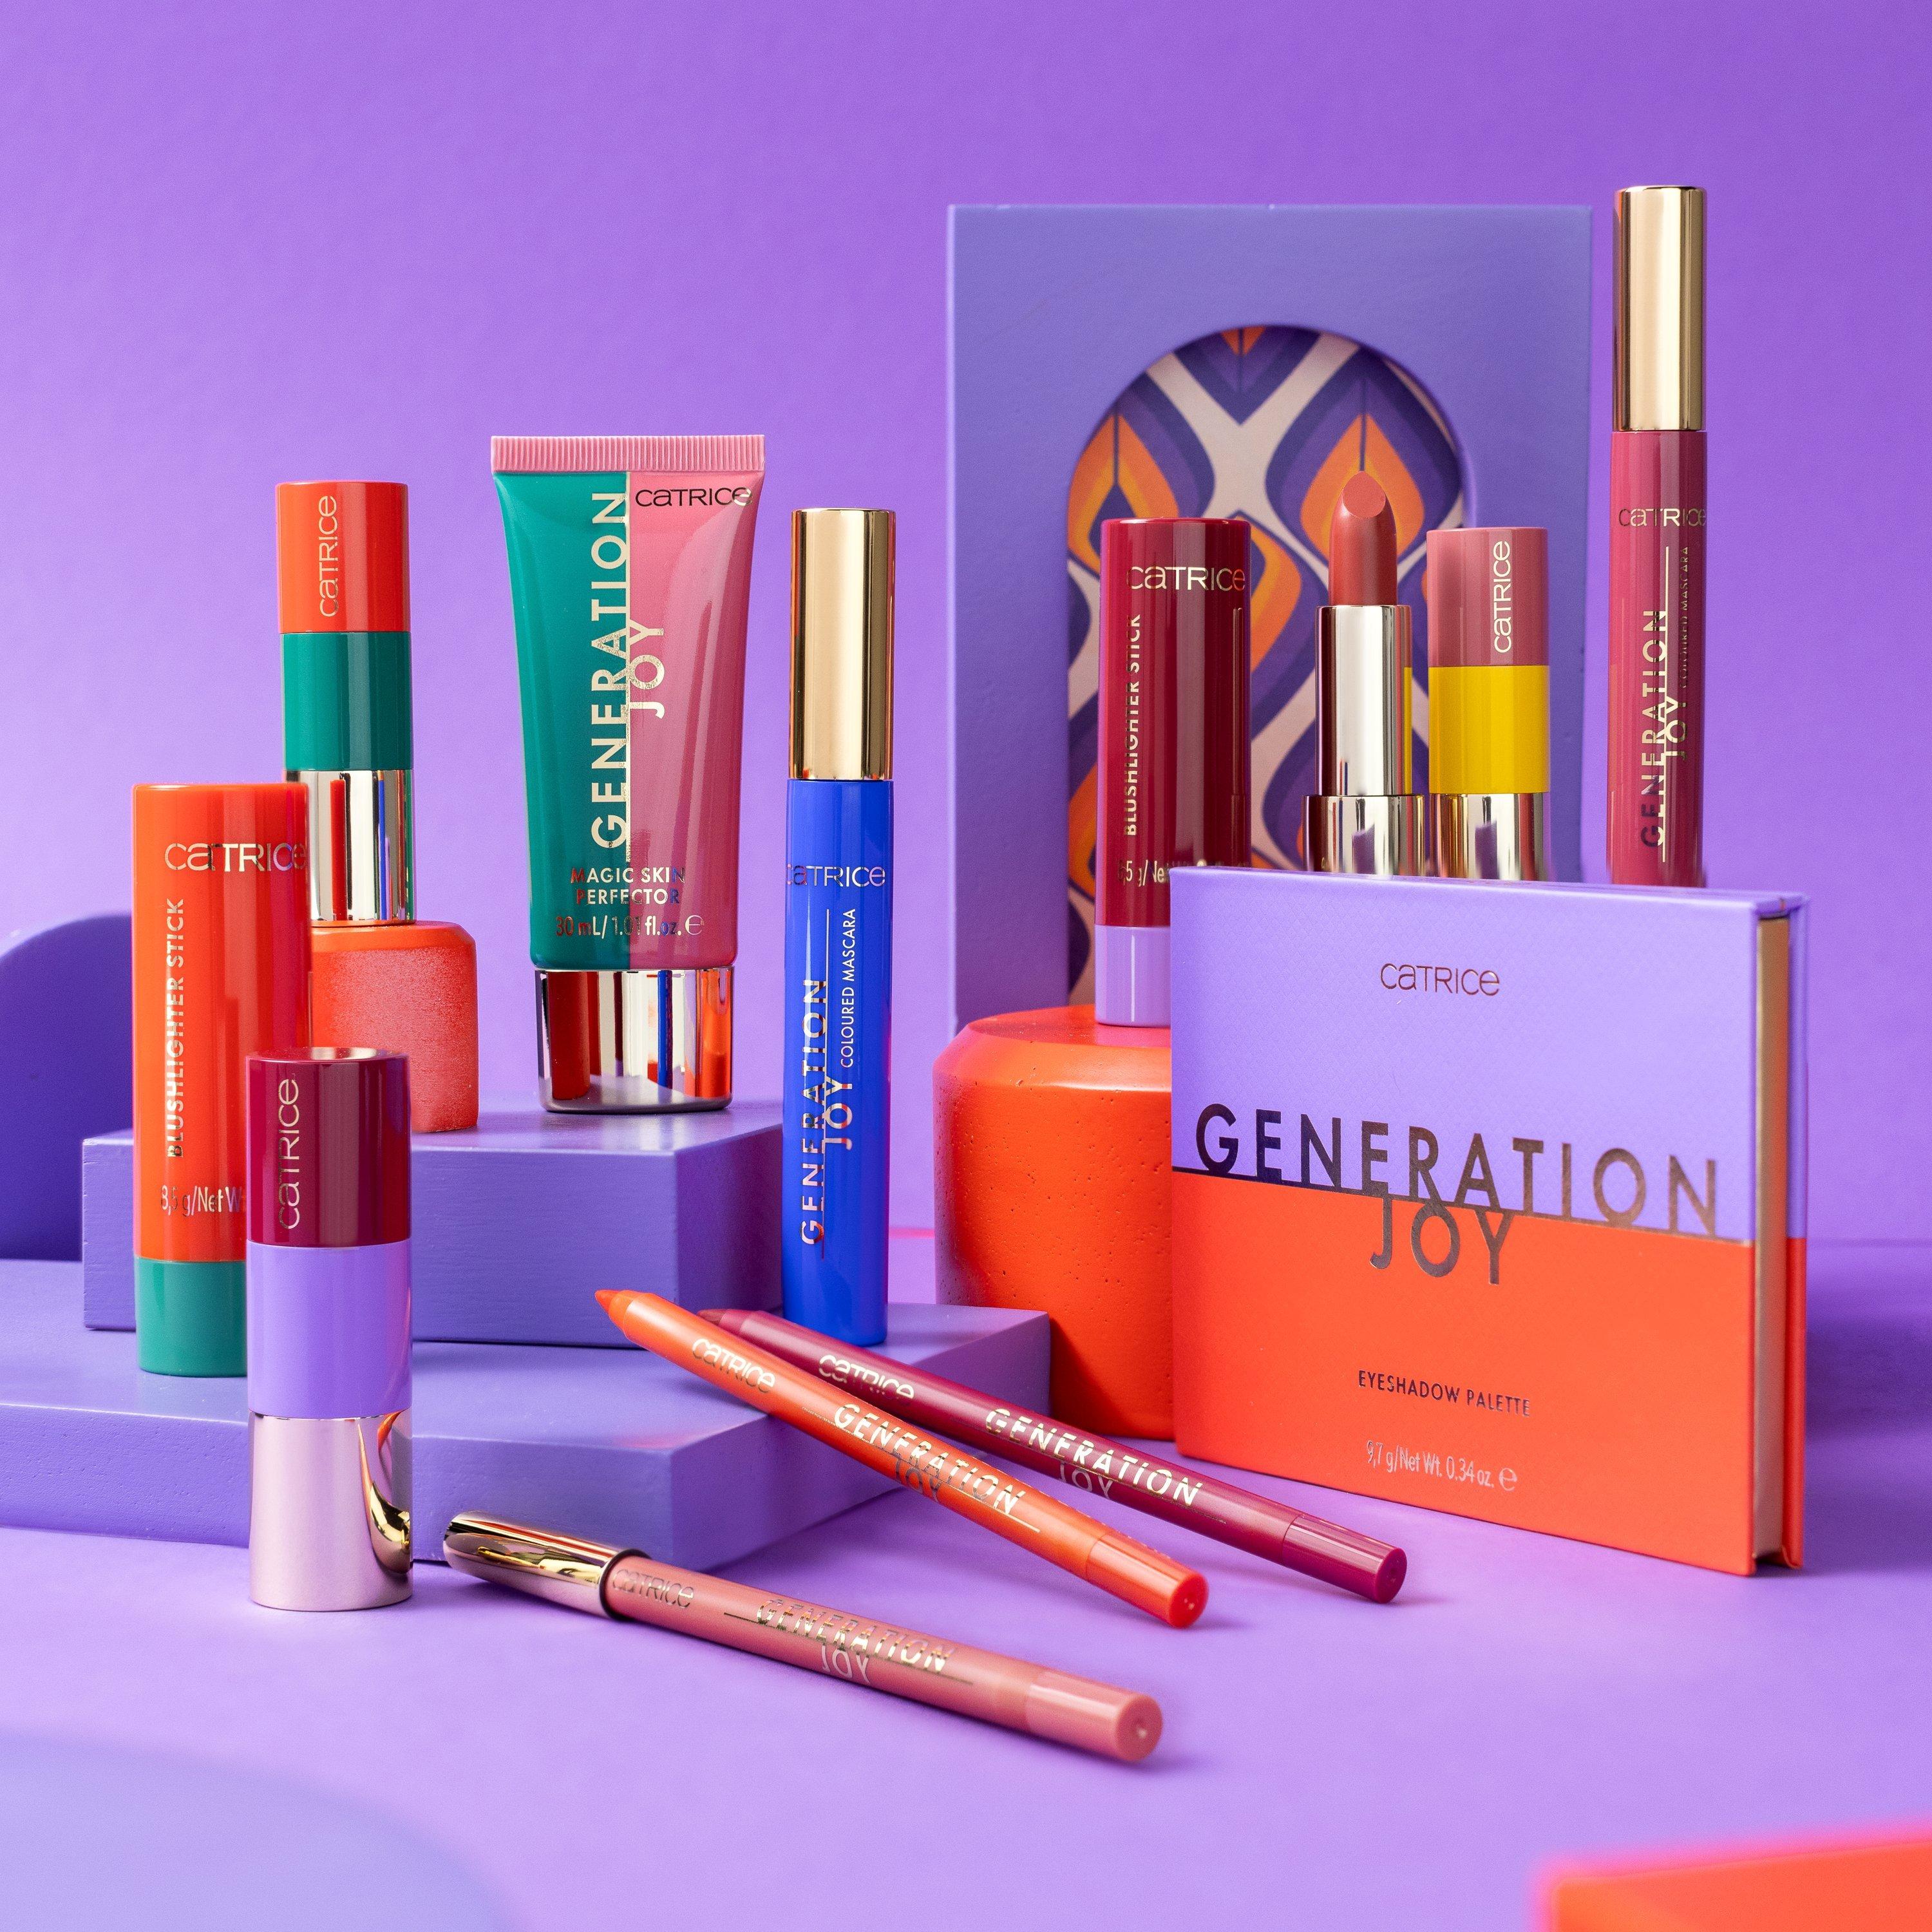 Catrice Generation Joy Limited Edition gamme de produits